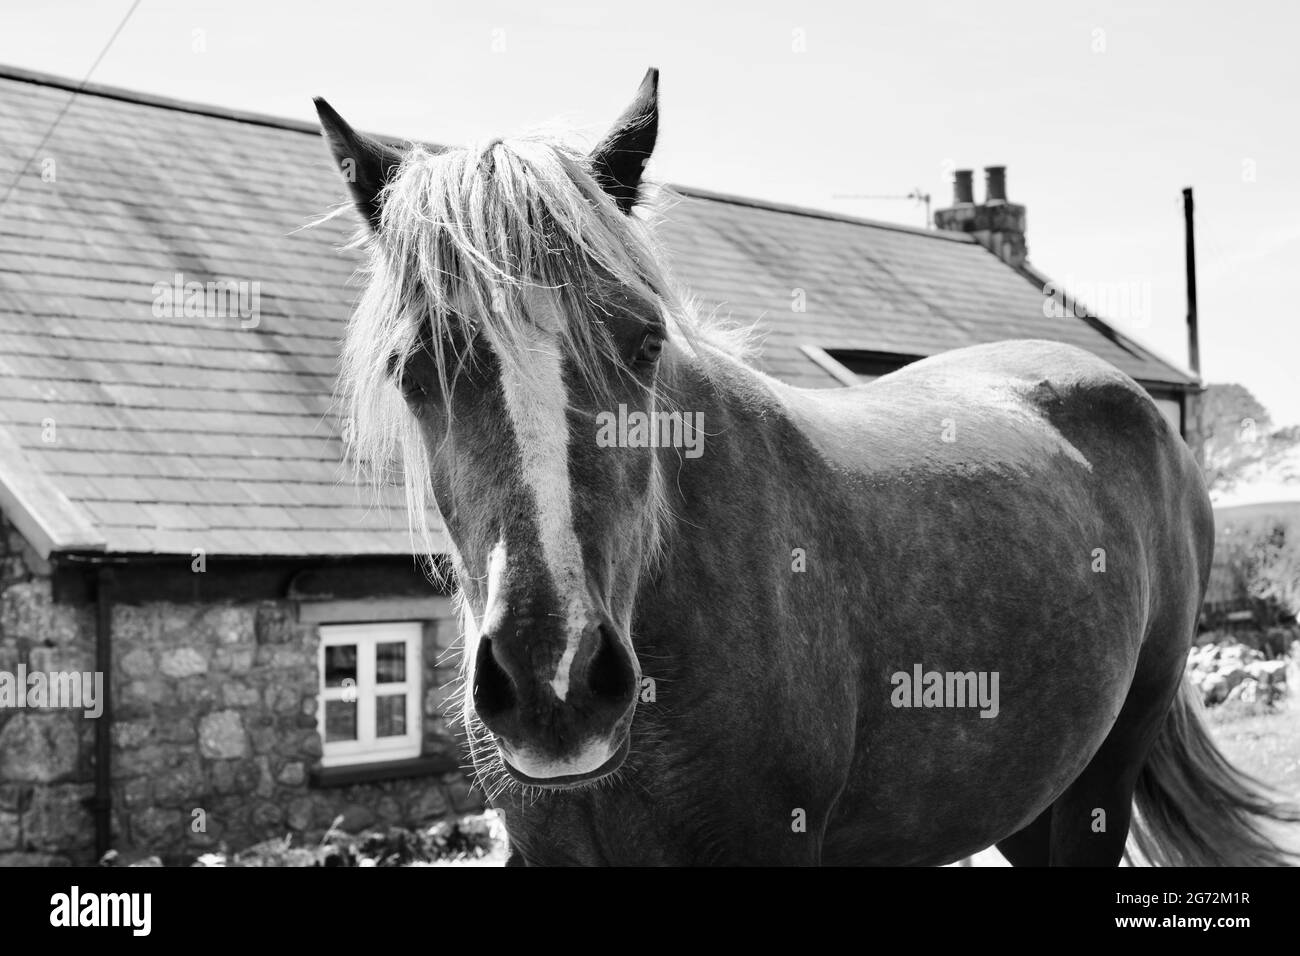 Des poneys et des chevaux parcourent les landes de la péninsule de Gower, dans le sud du pays de Galles, en paissant sur la riche herbe et en profitant de la liberté d'explorer de vastes zones de terre. Banque D'Images